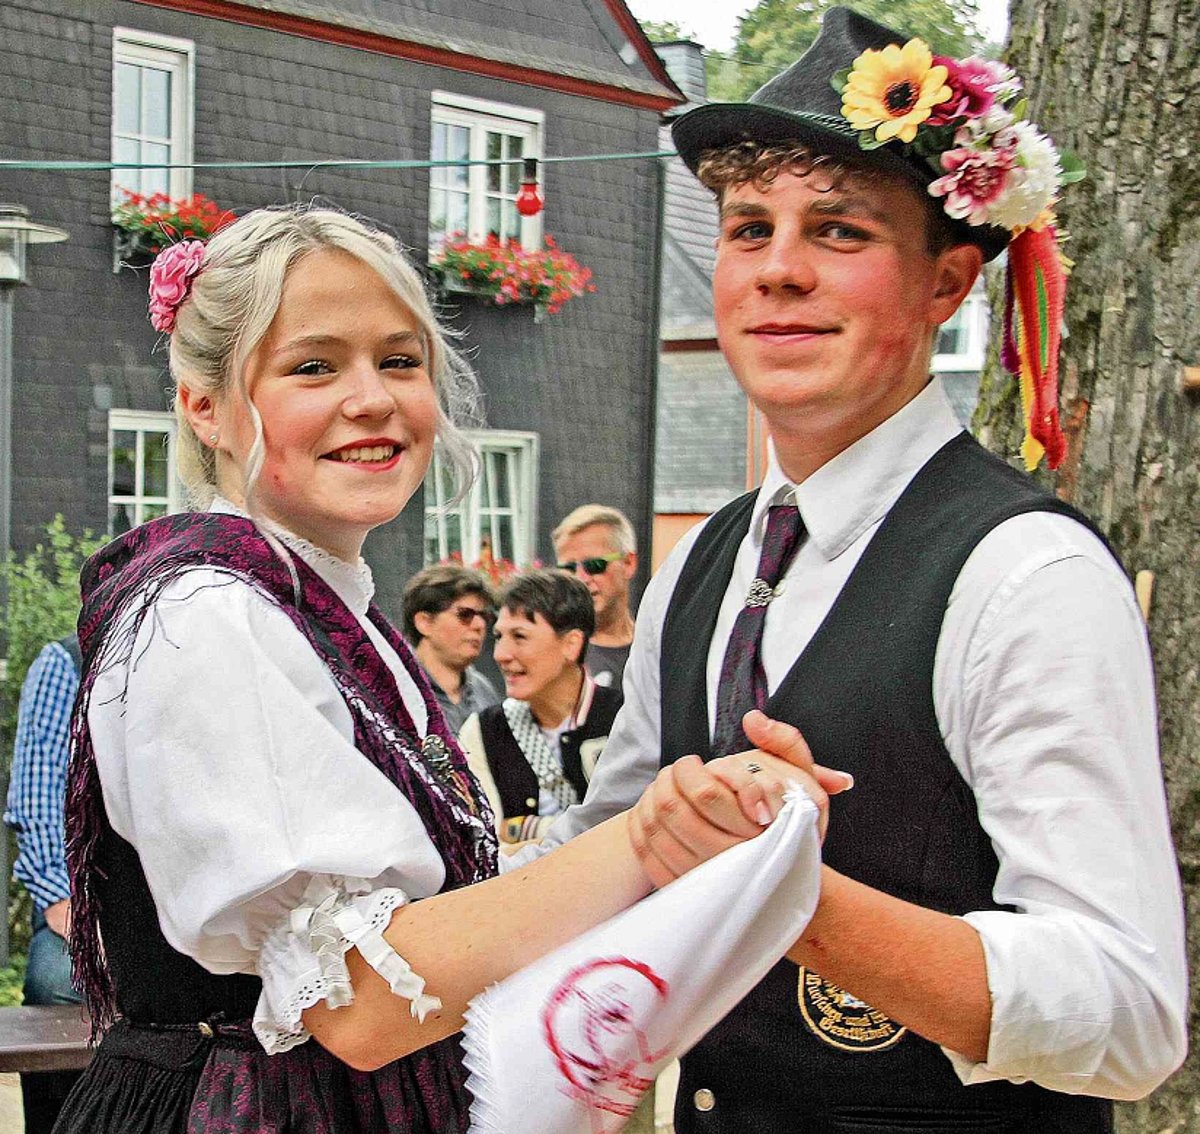 Das Foto zeigt ein Kirchweihpaar in Tracht. Beide schauen in die Kamera. Der Mann trägt einen Hut mit Blumenschmuck, das Mädchen hat ein weißes, besticktes Taschentuch in der rechten Hand. Sie stehen in Tanzstellung.